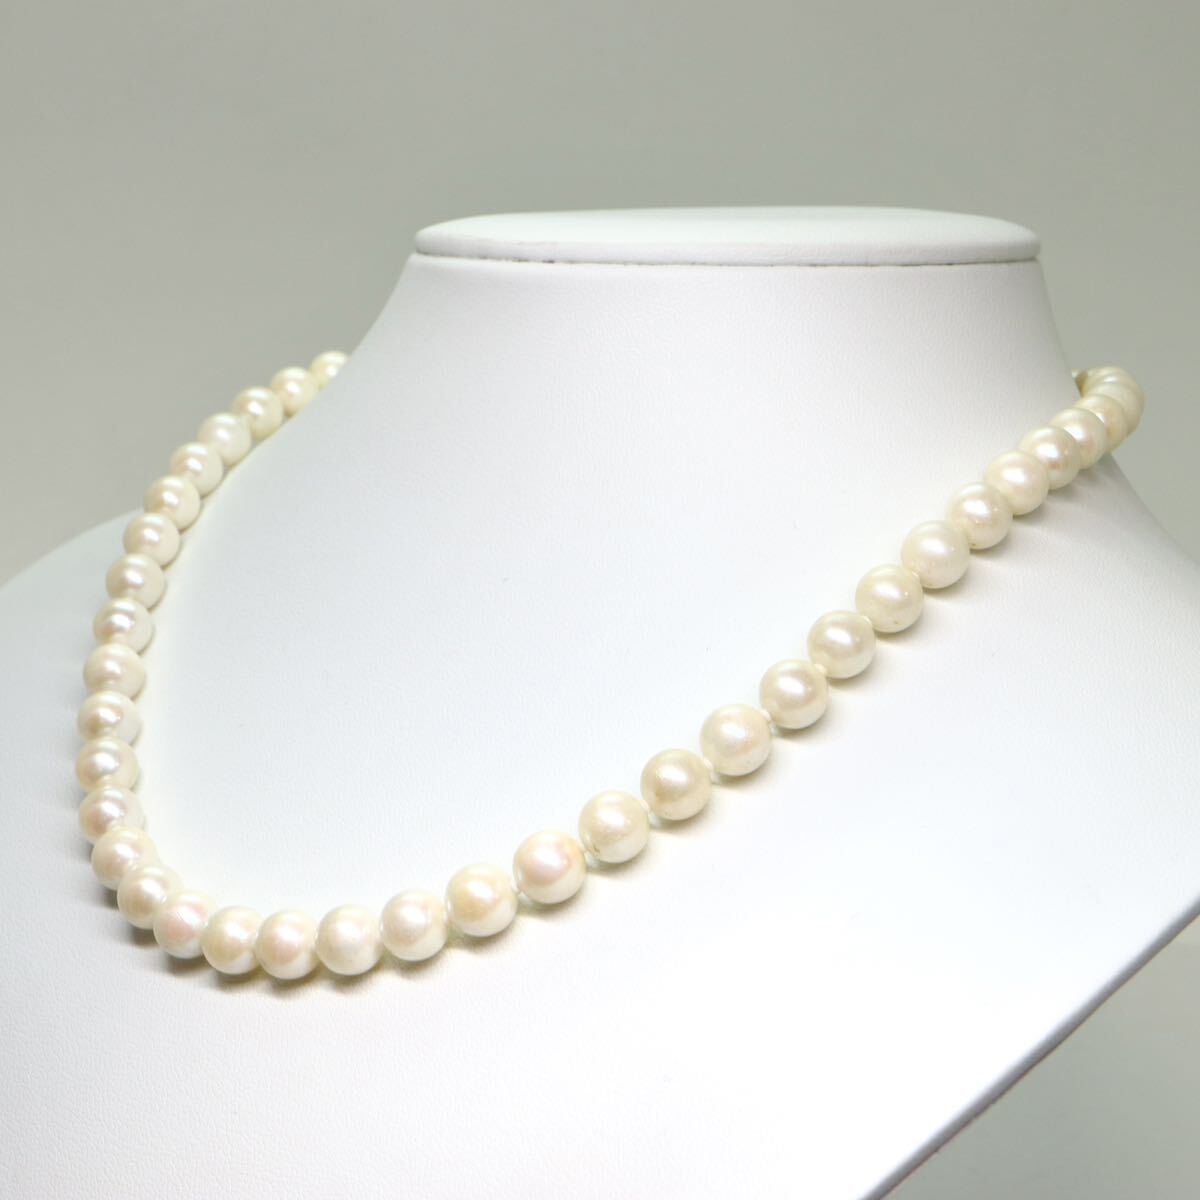 《アコヤ本真珠ネックレス》M 37.4g 約7.5-8.0mm珠 約43.5cm pearl necklace ジュエリー jewelry DC0/DC0の画像3